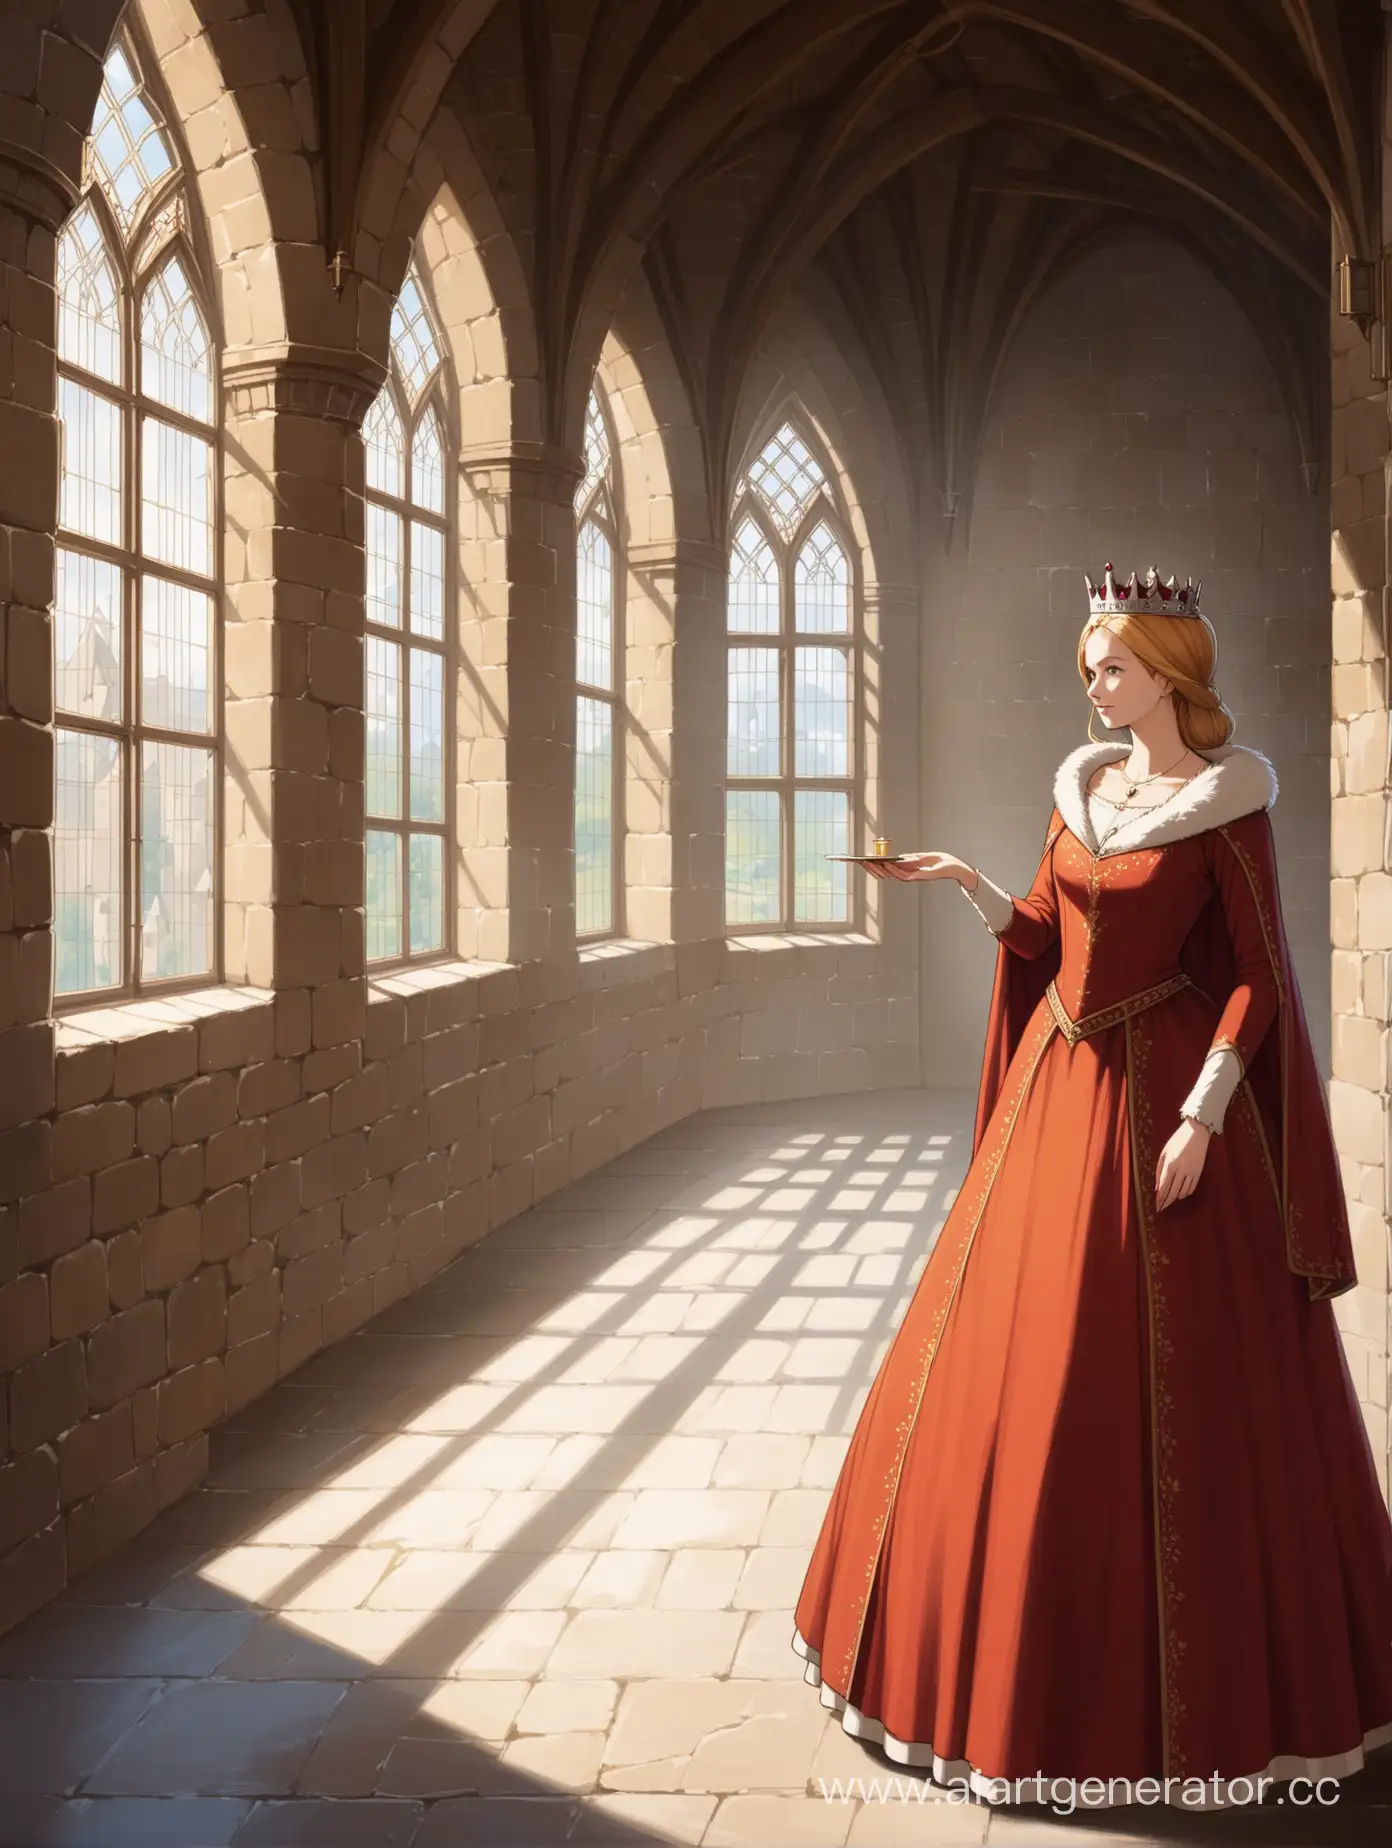 ,вполный рост королева с маленьким зеркалом в руке  в средневековом платье напротив окна в замке



